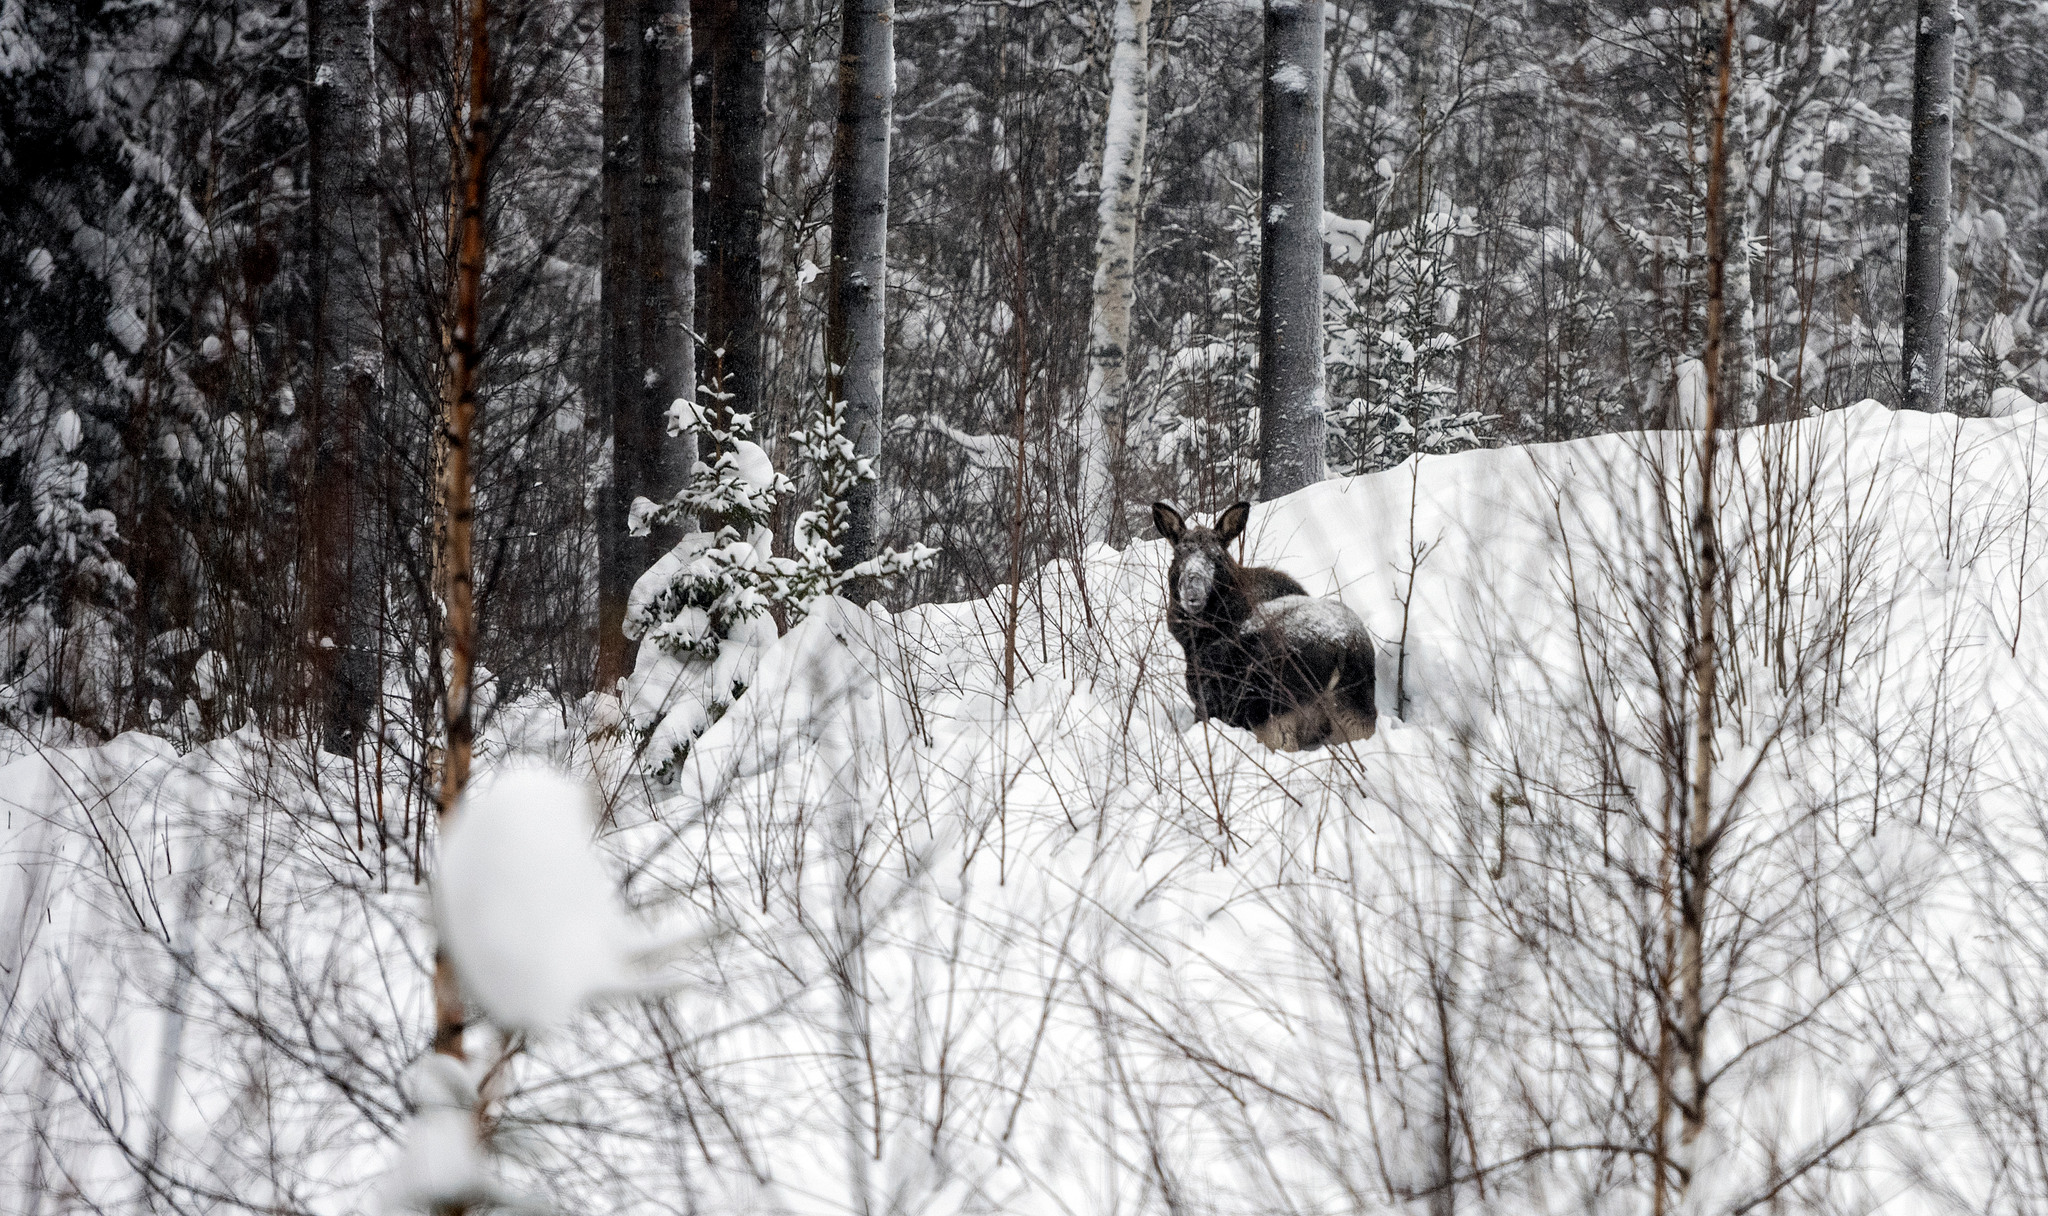 Det är oetiskt och orimligt att jaga älg då djuren kämpar för att överleva i vårt bistra kalla klimat med djup snö, skriver debattören.